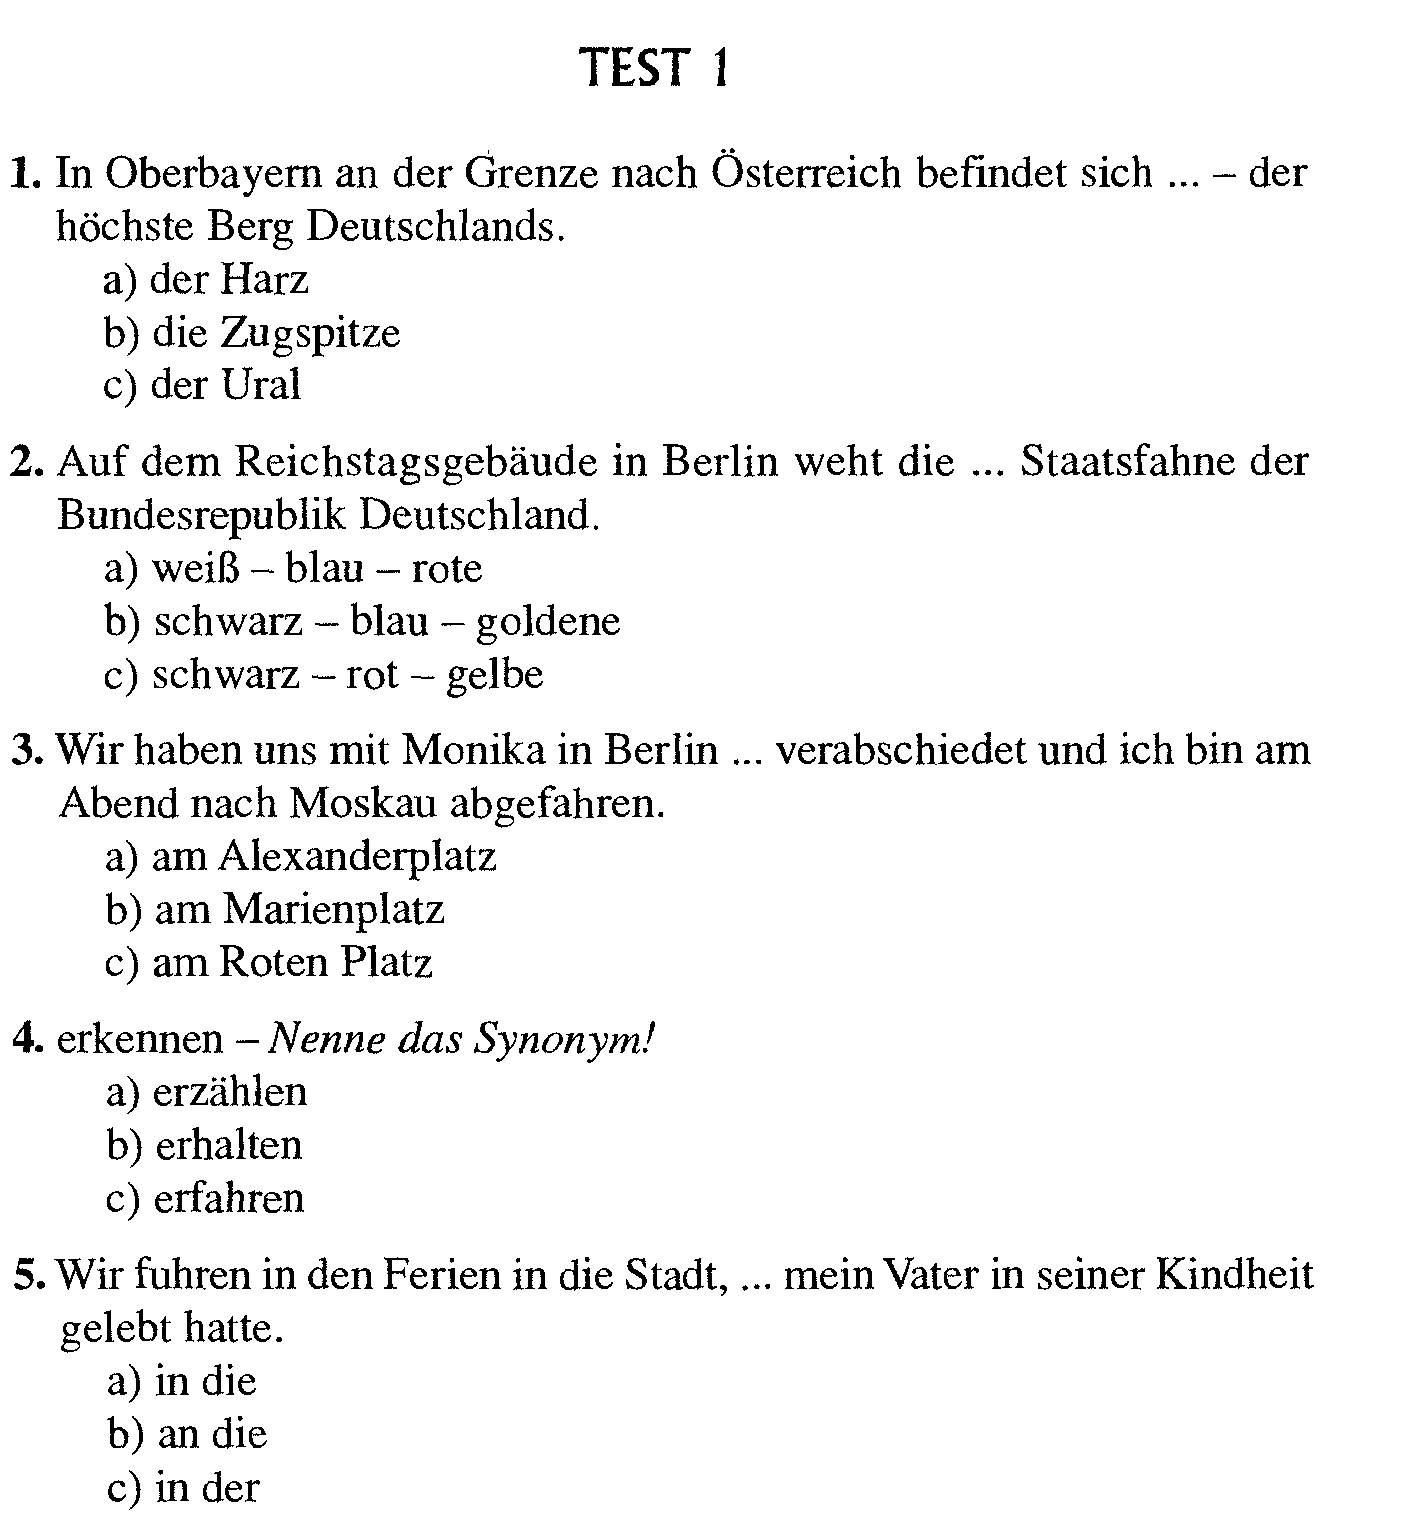 Тесты по немецкому языку для учащихся 11 класса общеобразовательной школы